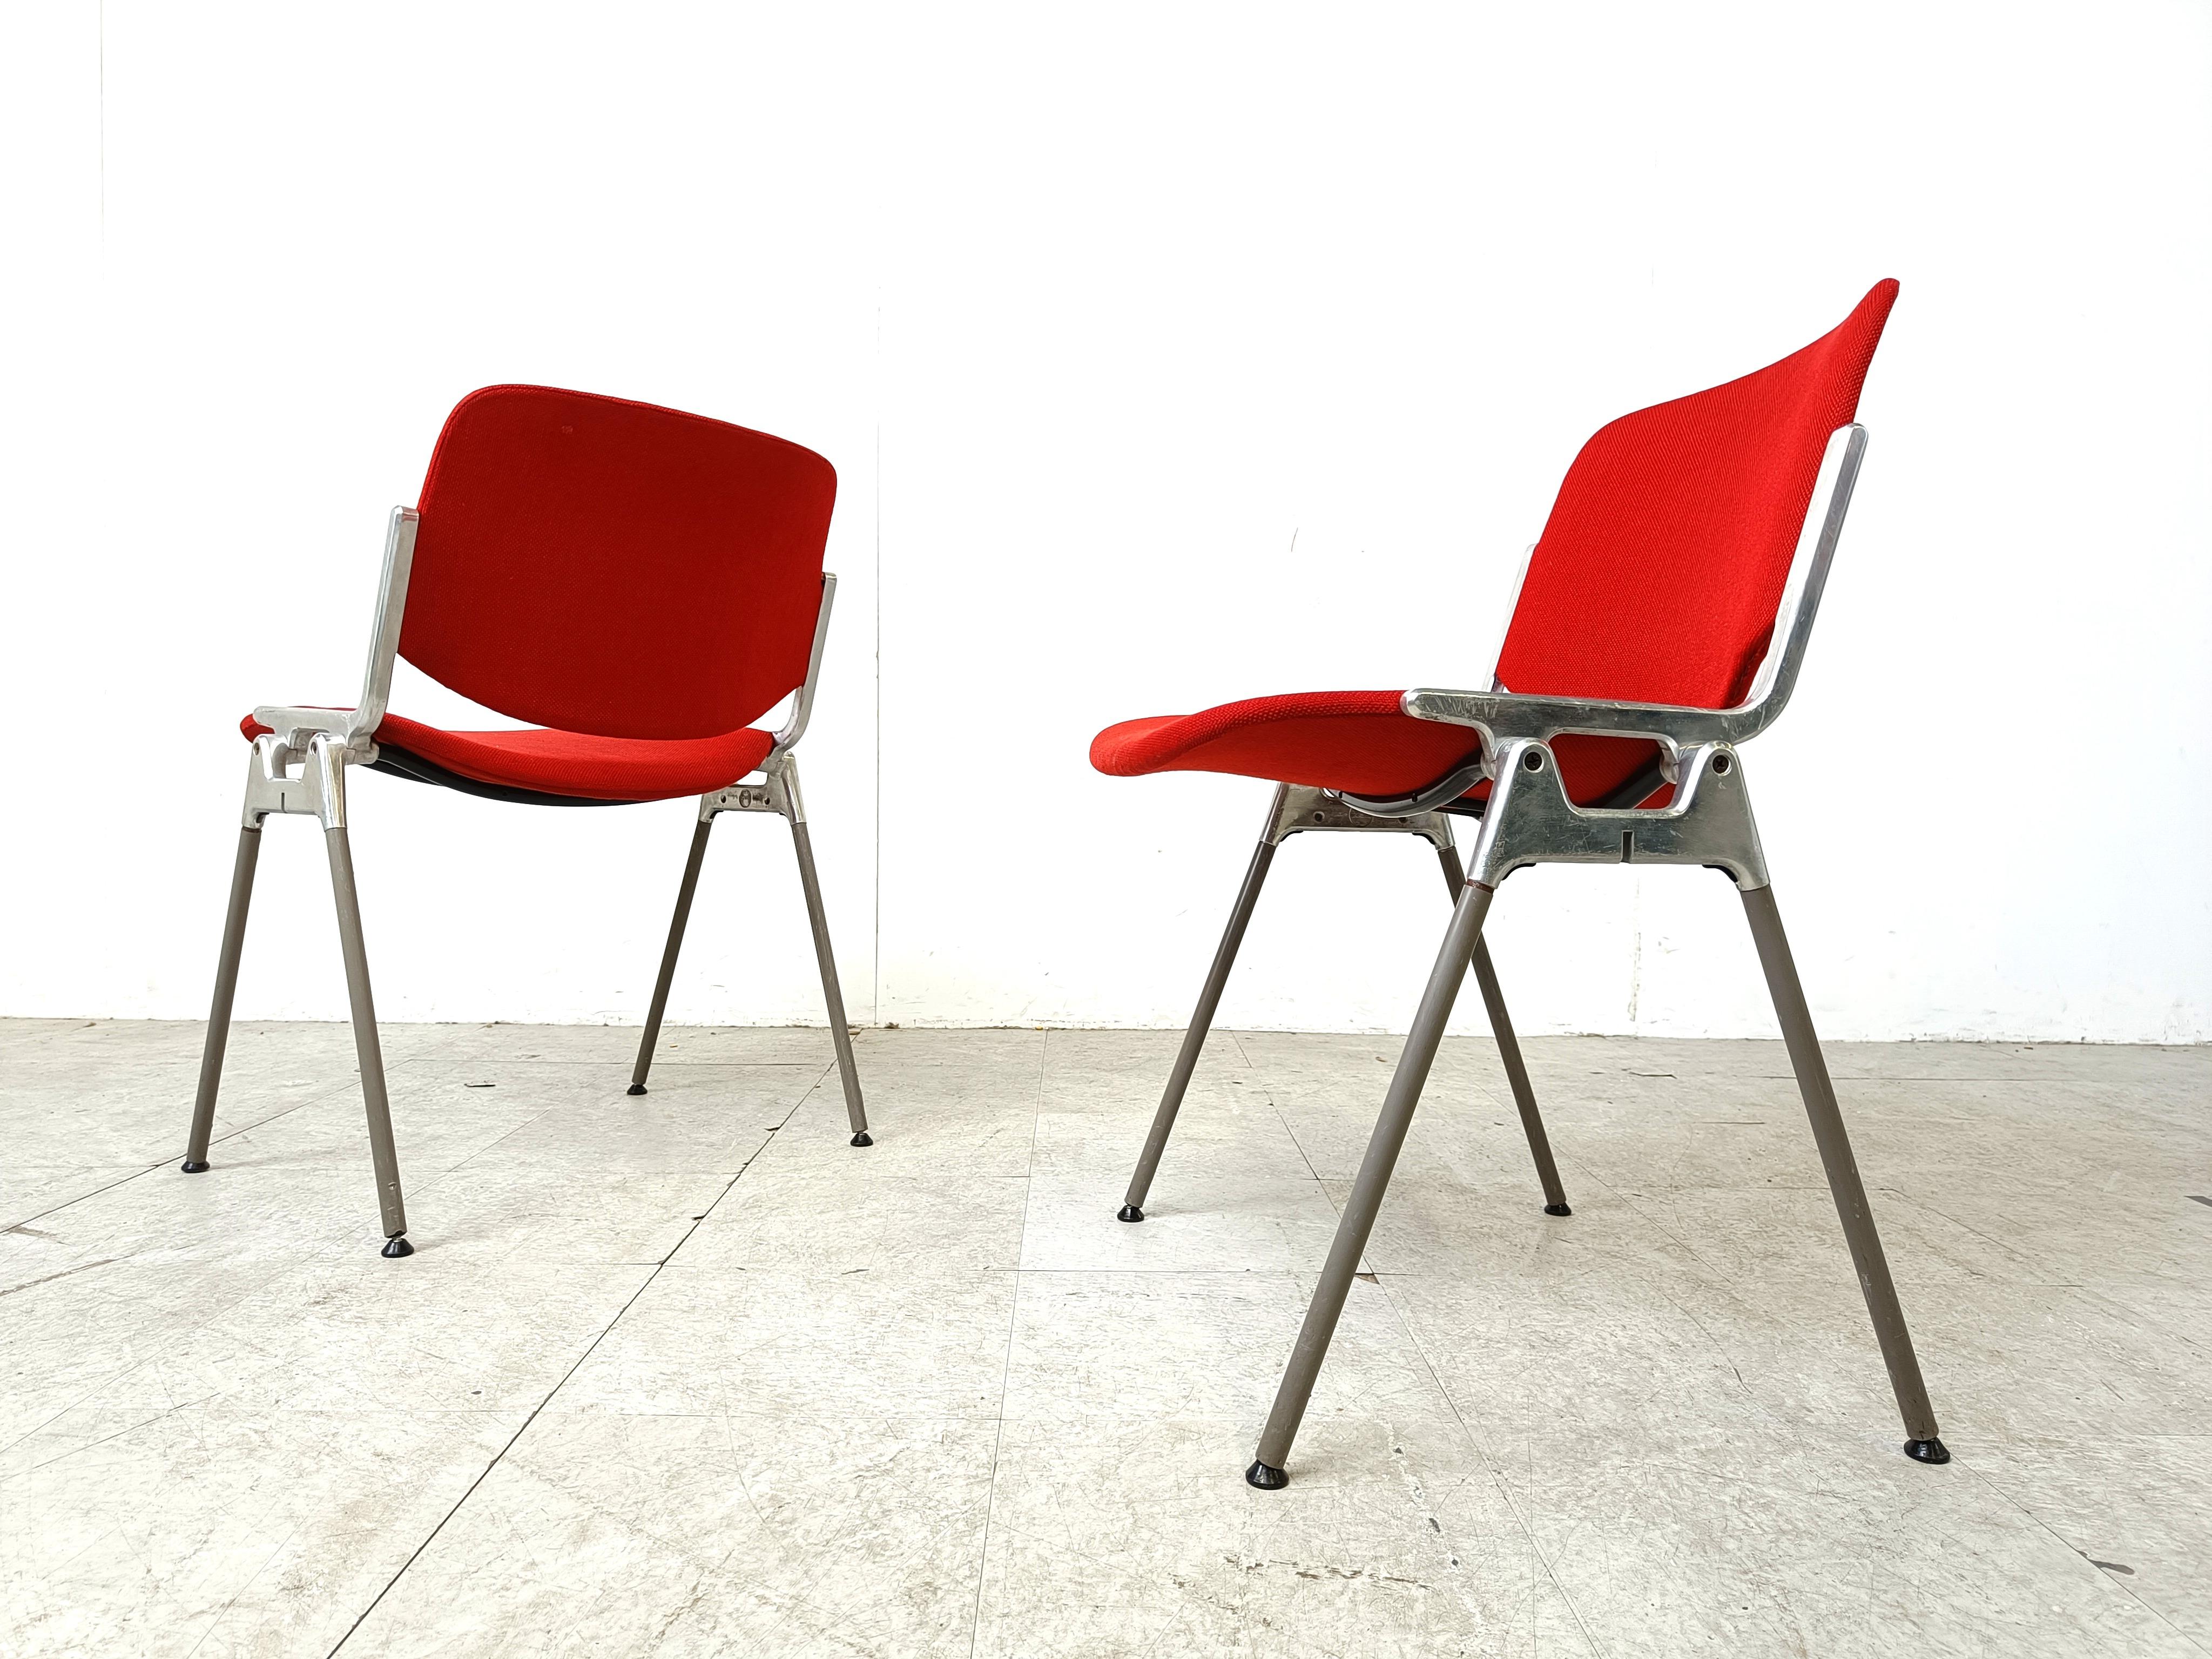 Chaises de salle à manger ou chaises d'appoint vintage conçues par Giancarlo Piretti pour Castelli.

Ces chaises peuvent être empilées et permettent de gagner beaucoup de place pour une utilisation occasionnelle.

reupholstered in red fabric.

Bon